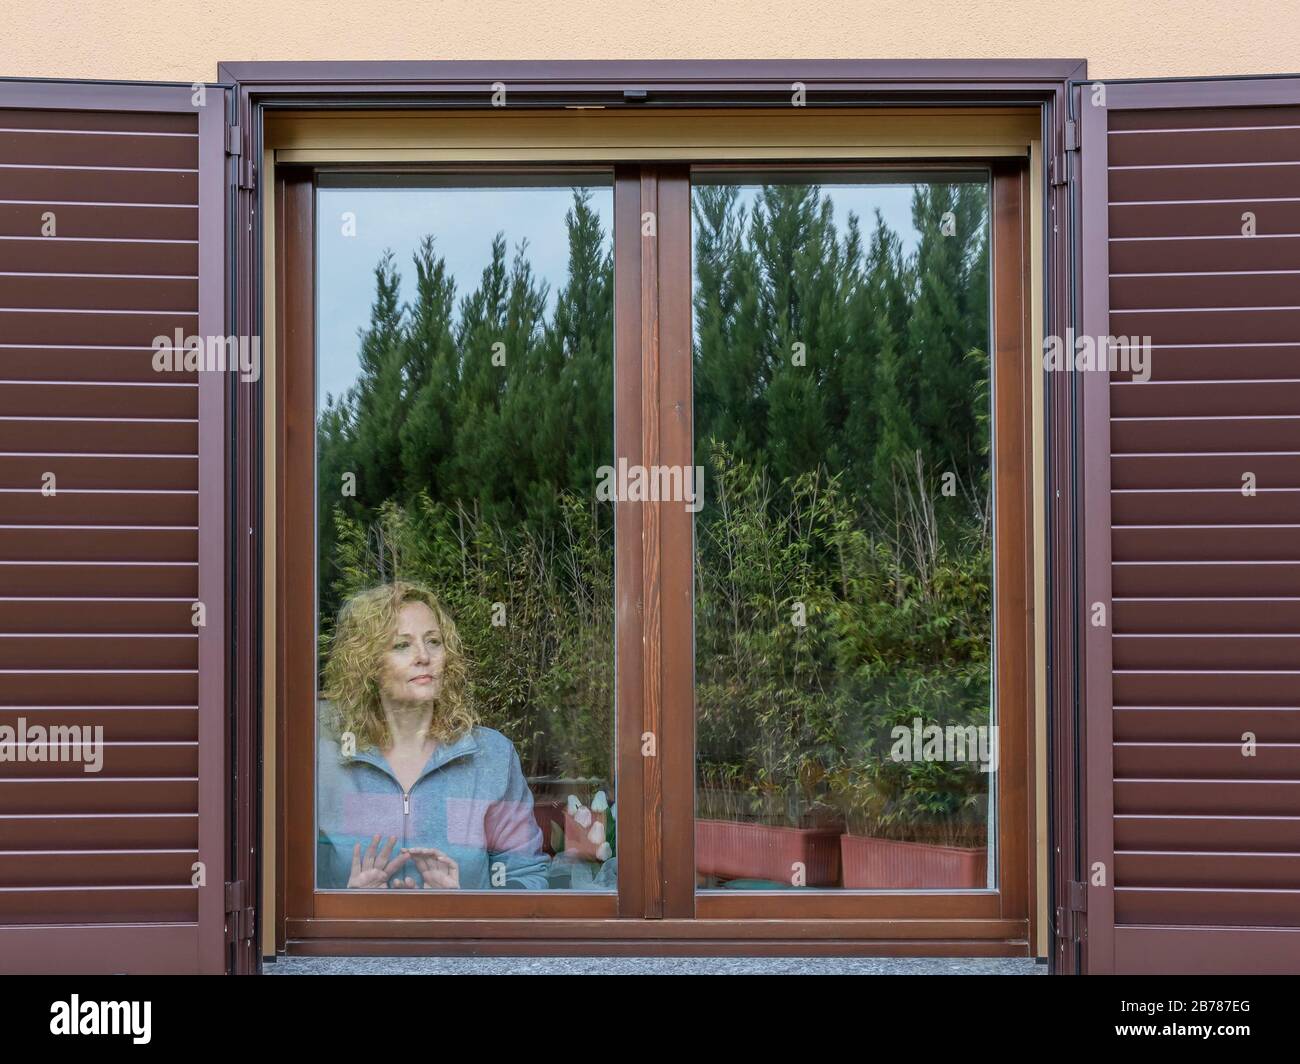 Une femme blonde italienne forcée de rester à l'intérieur à cause de la quarantaine Coronavirus Covid-19, regarde le monde extérieur avec une expression mélancolie Banque D'Images